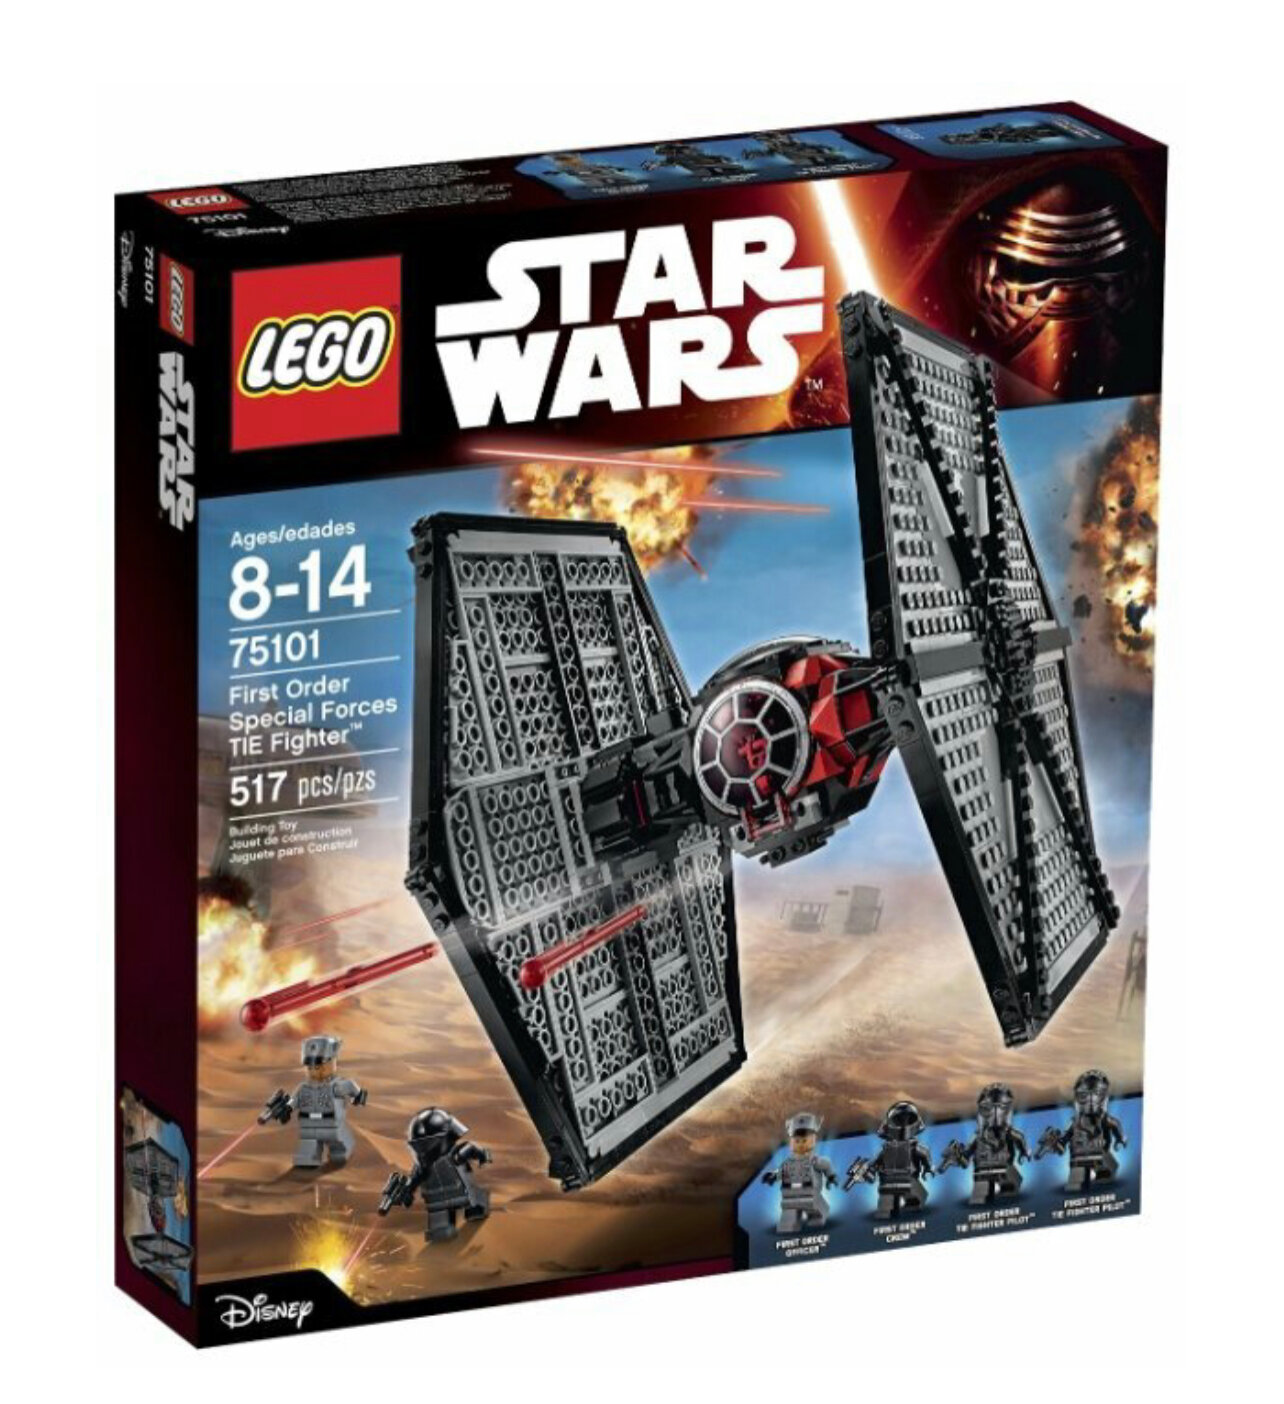 LEGO Star Wars 75101 Истребитель особых войск Первого Ордена, 517 дет.